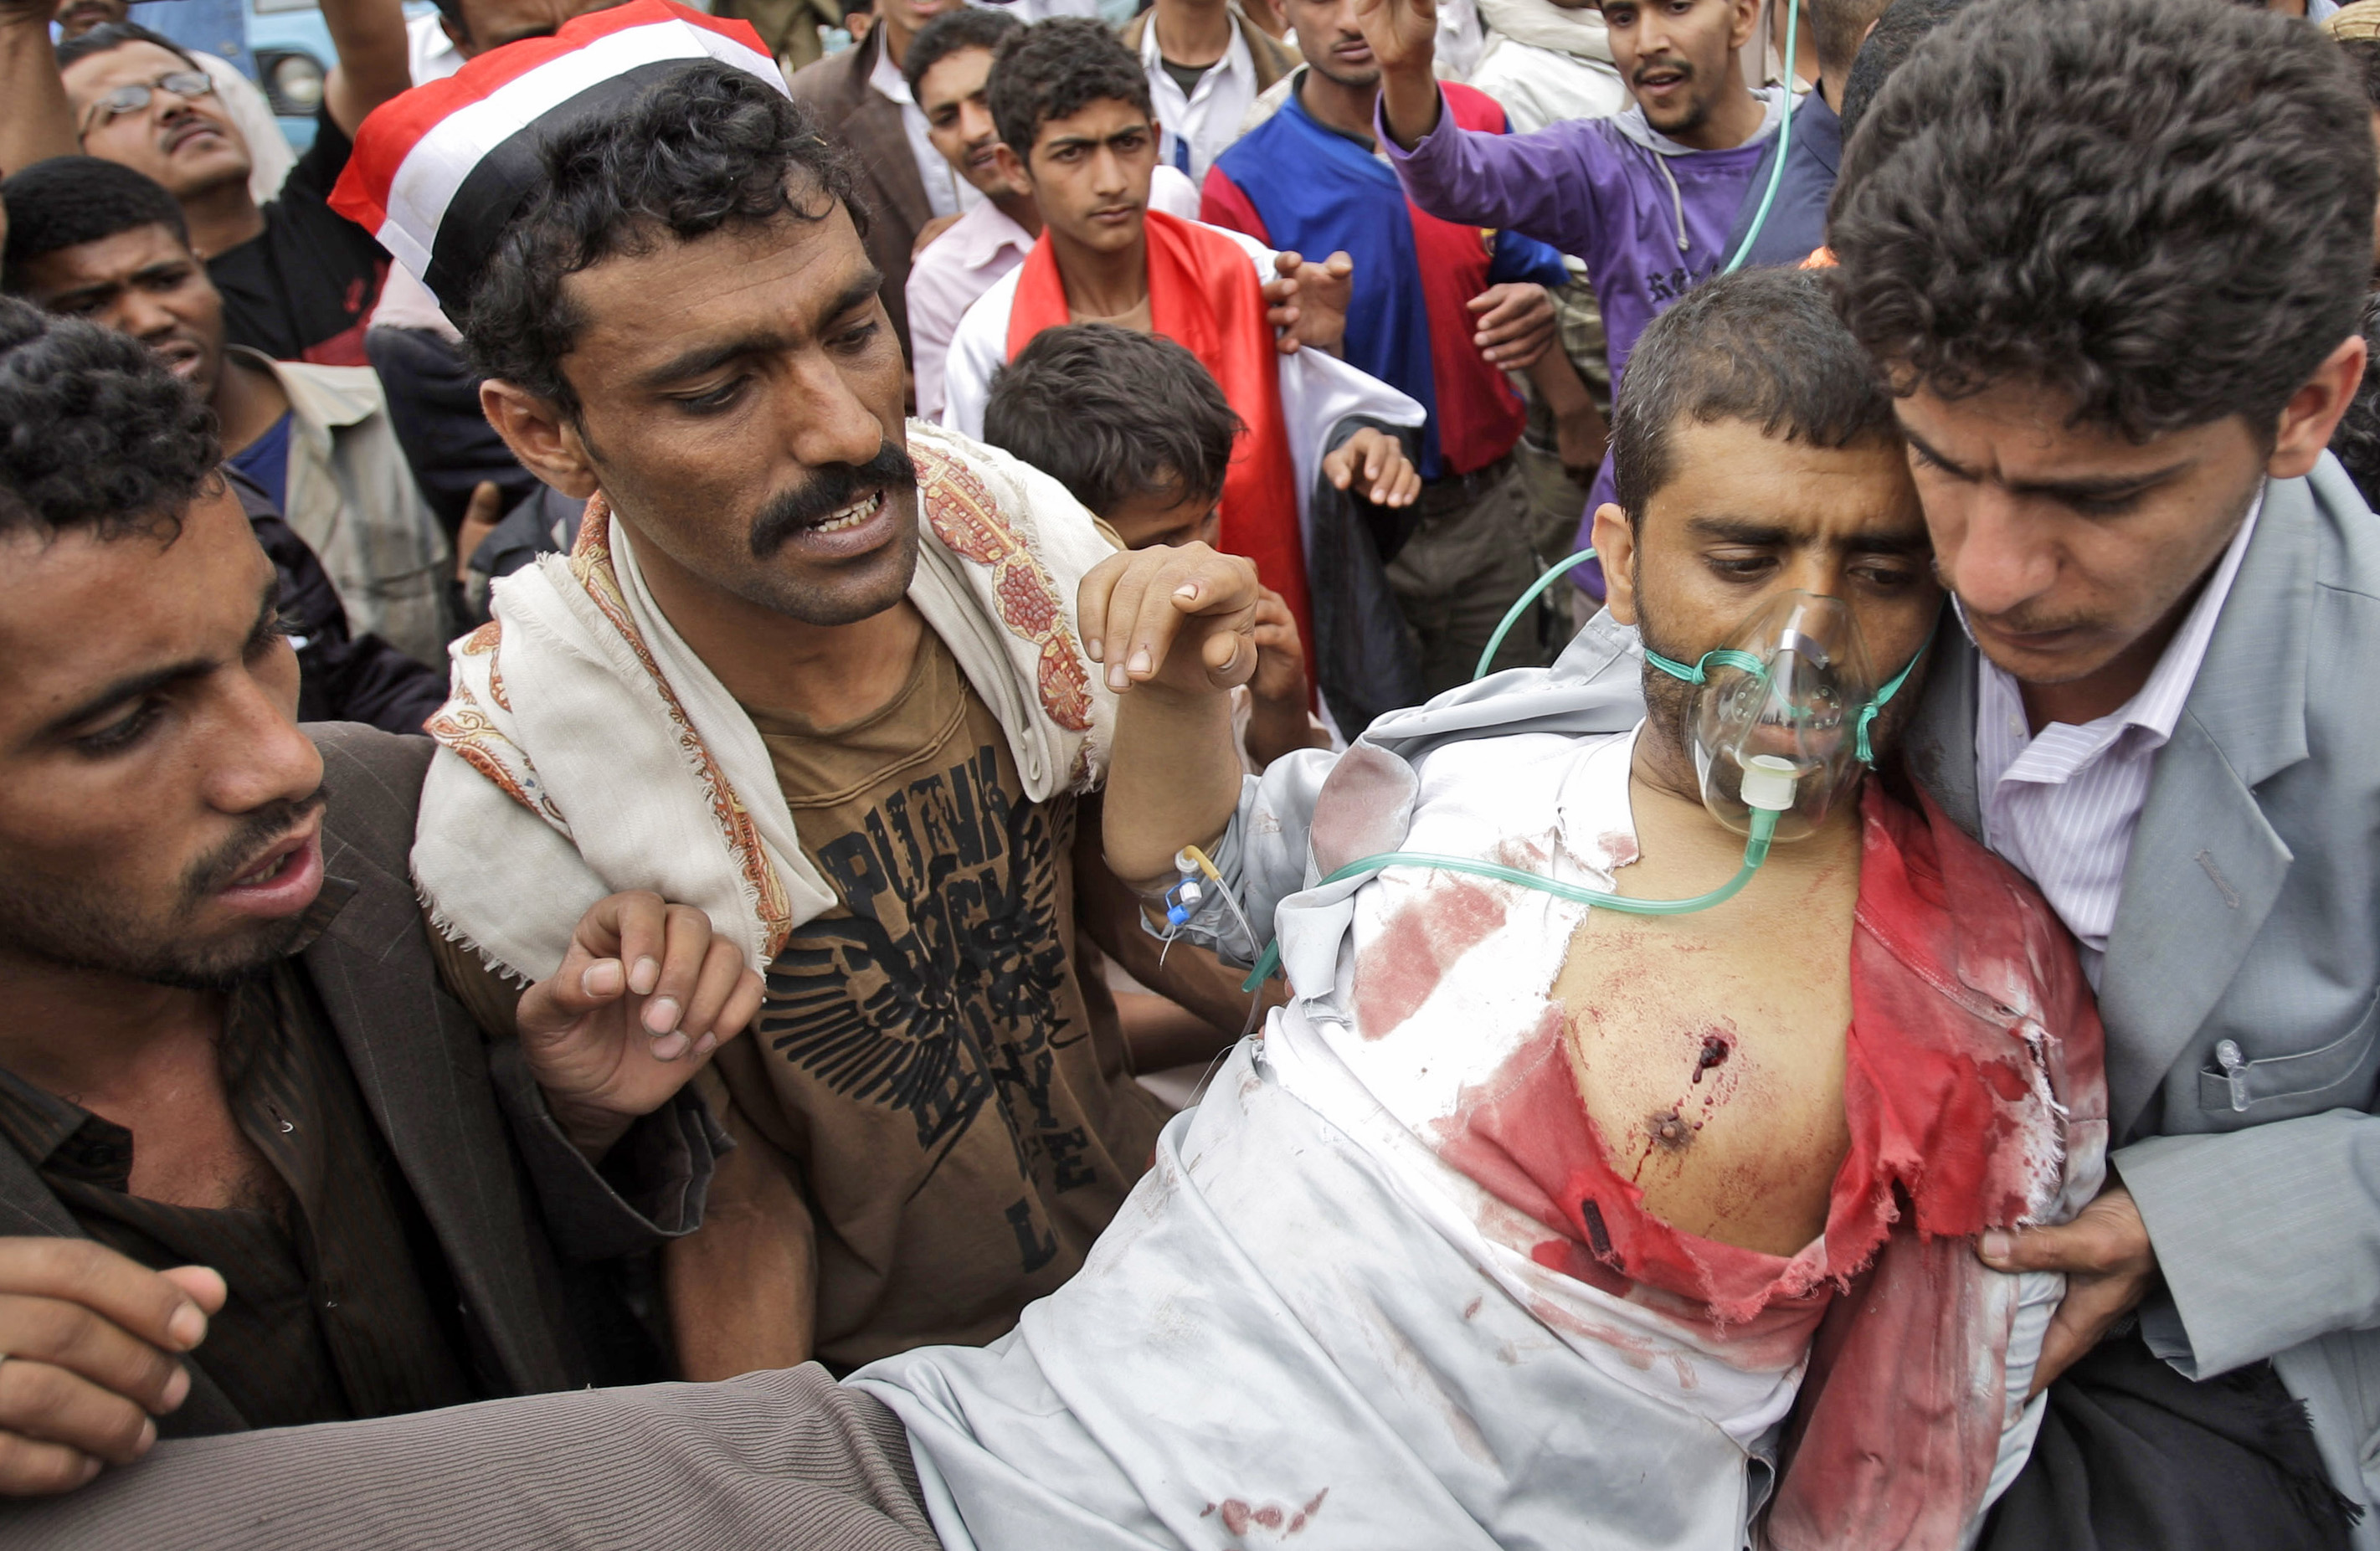 En skottskadad man bärs bort av sina meddemonstranter i Sanaa under onsdagen.